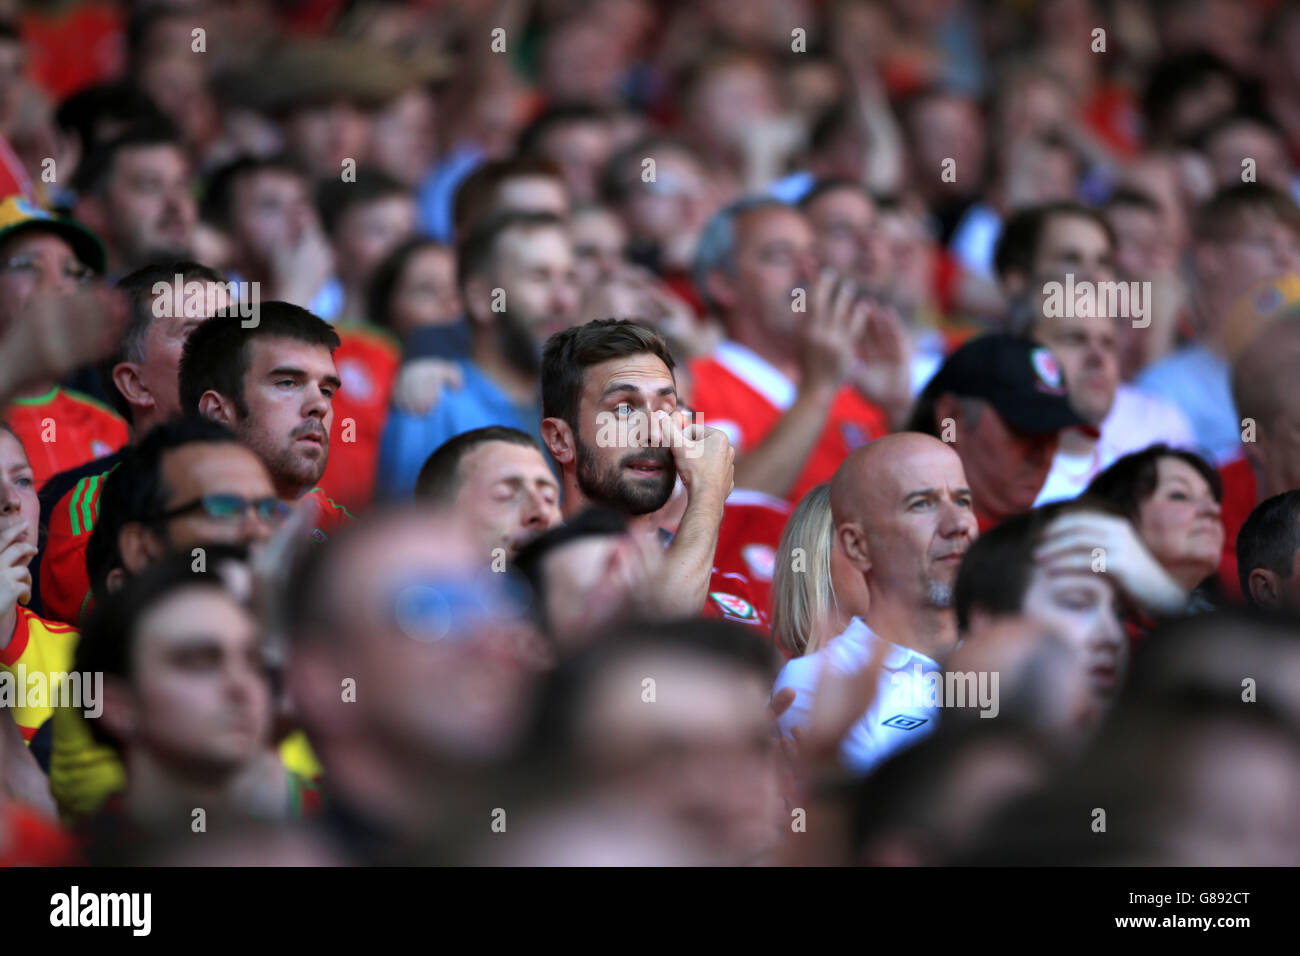 *Alternate Crop* UN fan strappa una lacrima dagli occhi durante gli anthem nazionali, prima della partita di qualificazione UEFA Euro 2016 al Cardiff City Stadium di Cardiff. Foto Stock